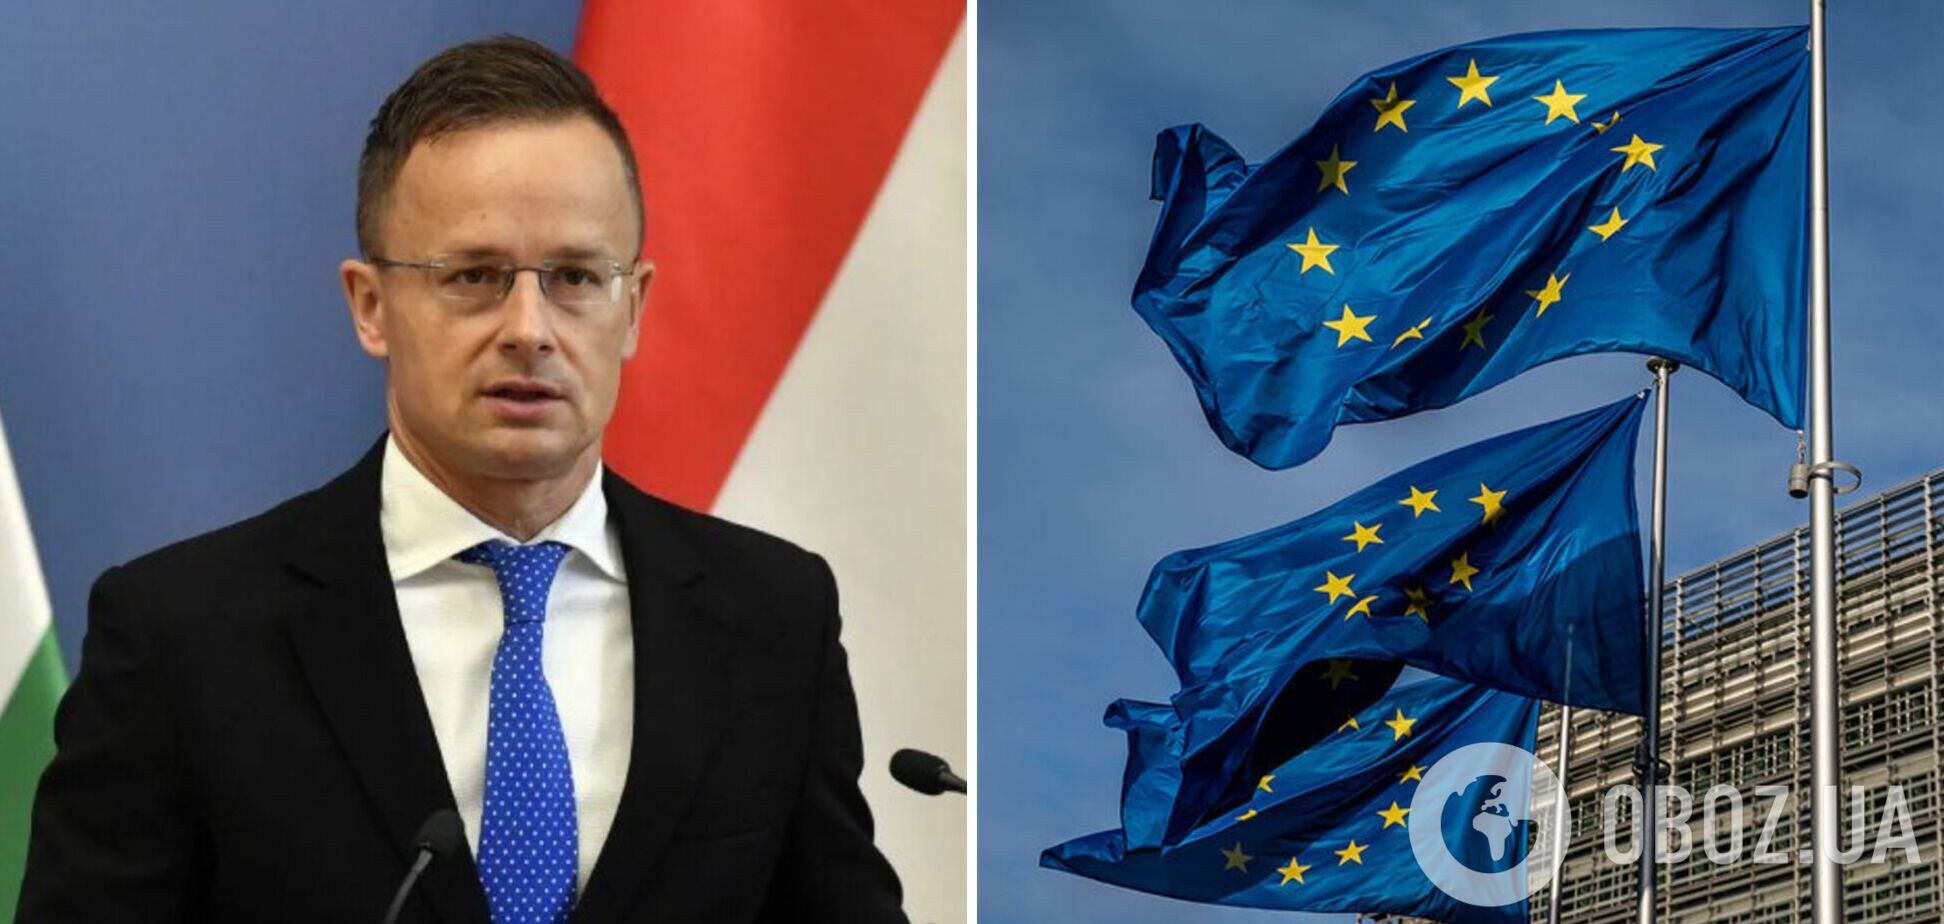 Глава МИД Венгрии выдал, что 'лицемерный' ЕС завидует его стране и Турции